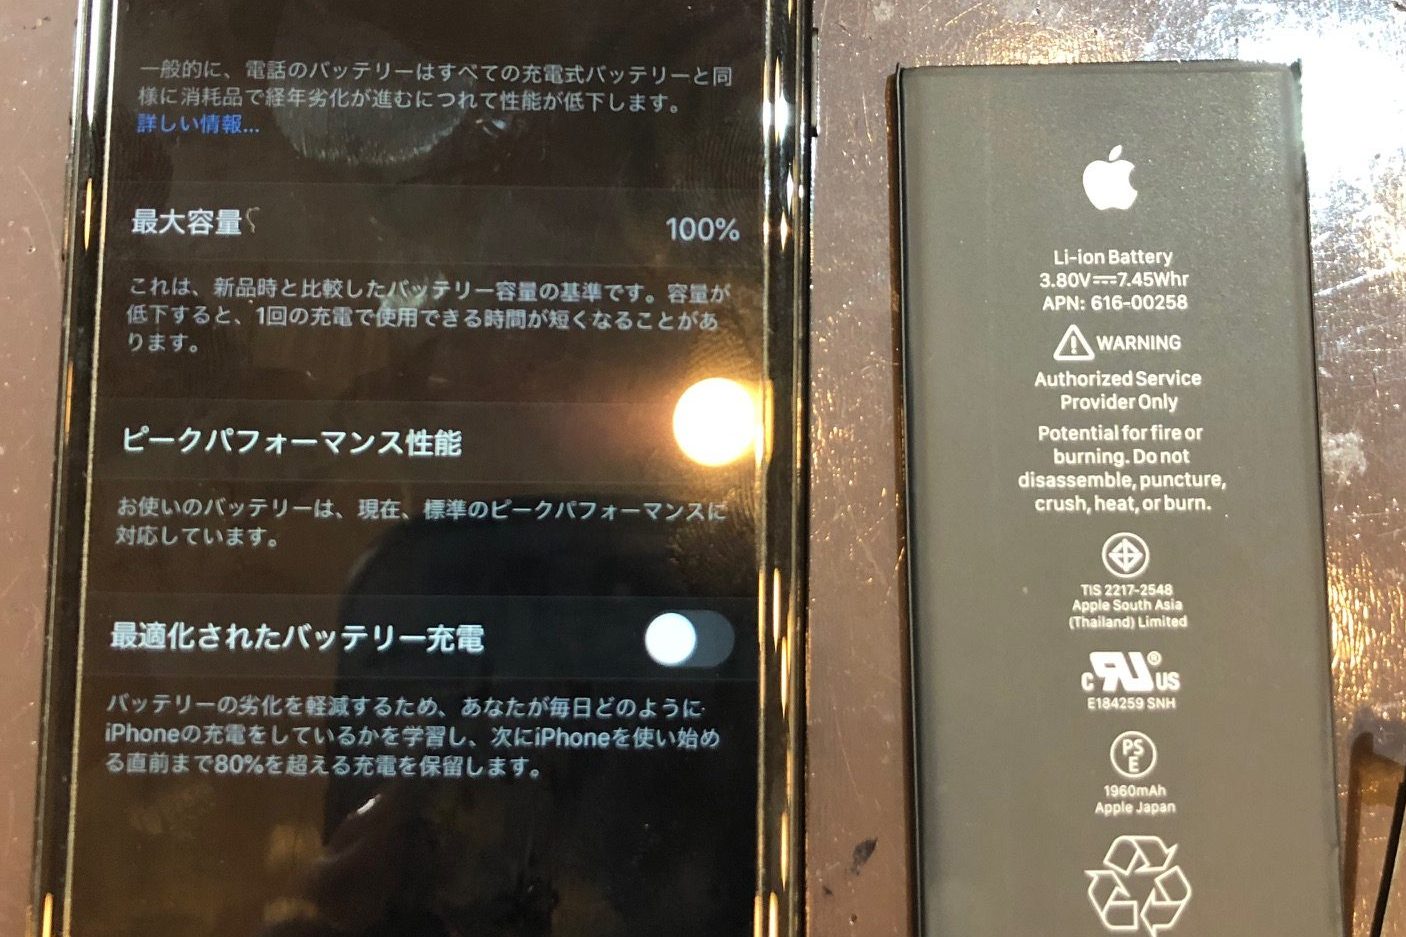 iPhone修理スマートクール【11/12OPEN】姉妹店修理実例